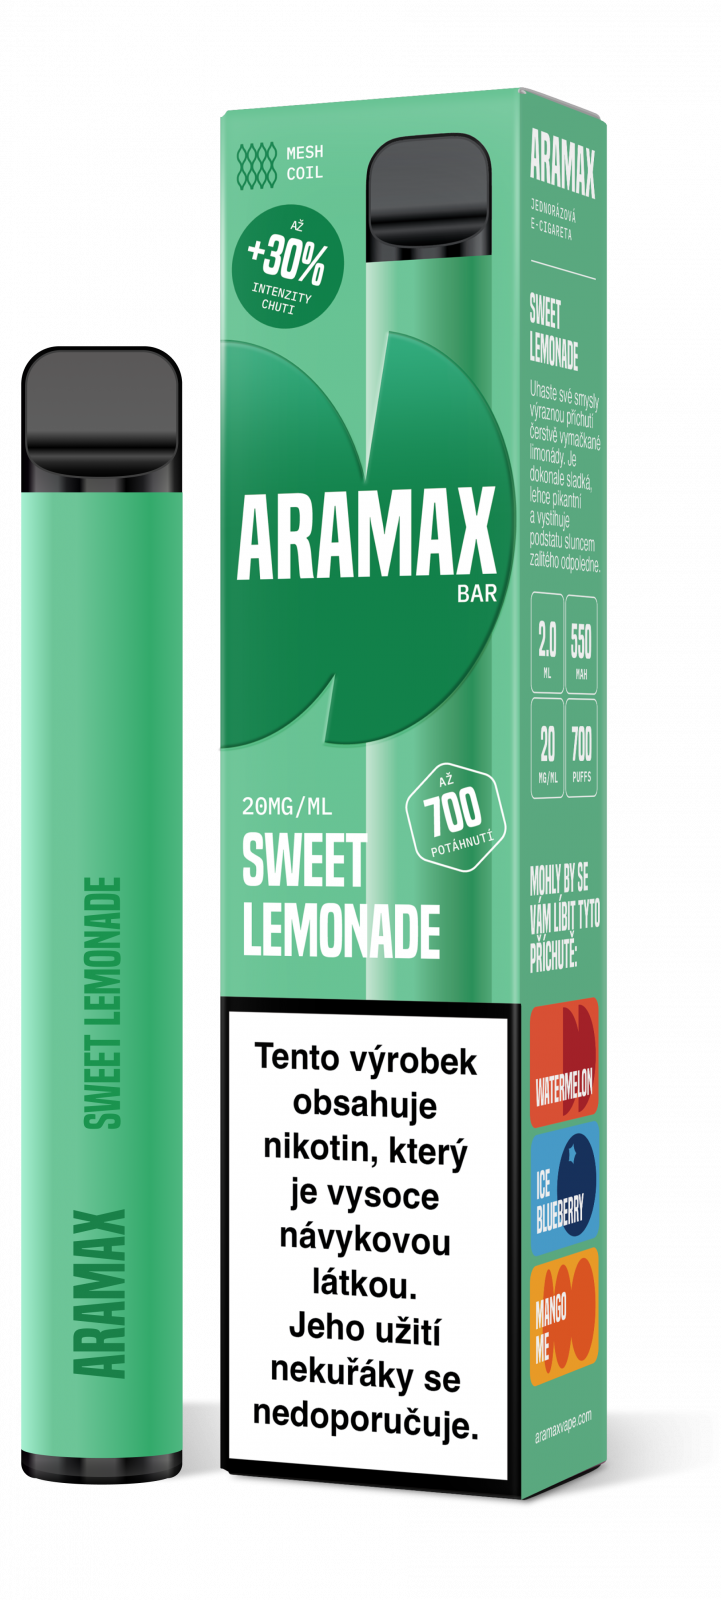 SWEET LEMONADE 20mg/ml - Aramax Bar 700